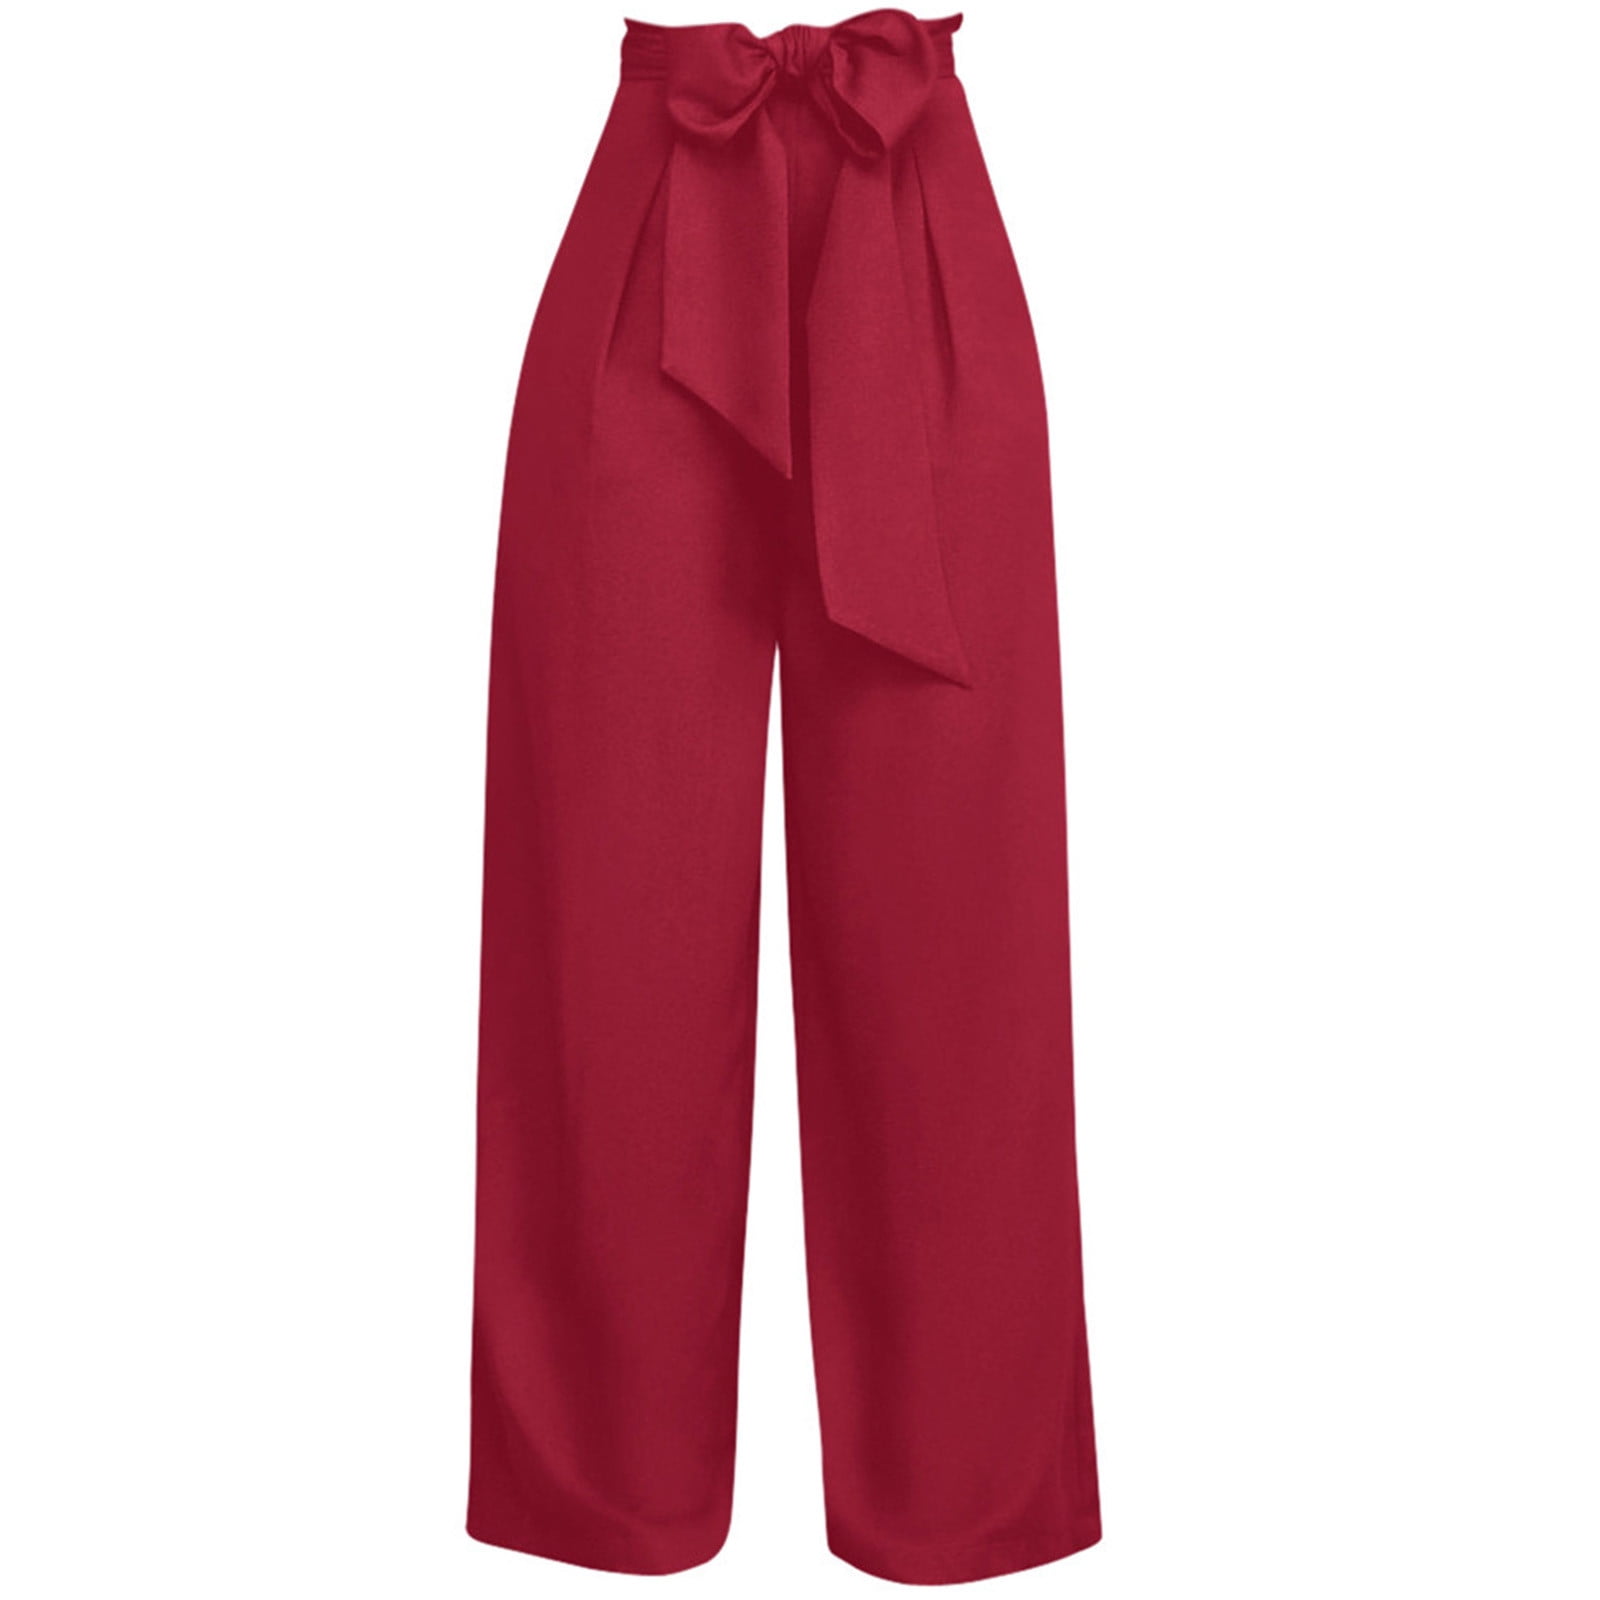 Green High Waist Summer Pants | Red Wide Leg Pants Summer | Red Summer  Trousers Women - Pants & Capris - Aliexpress